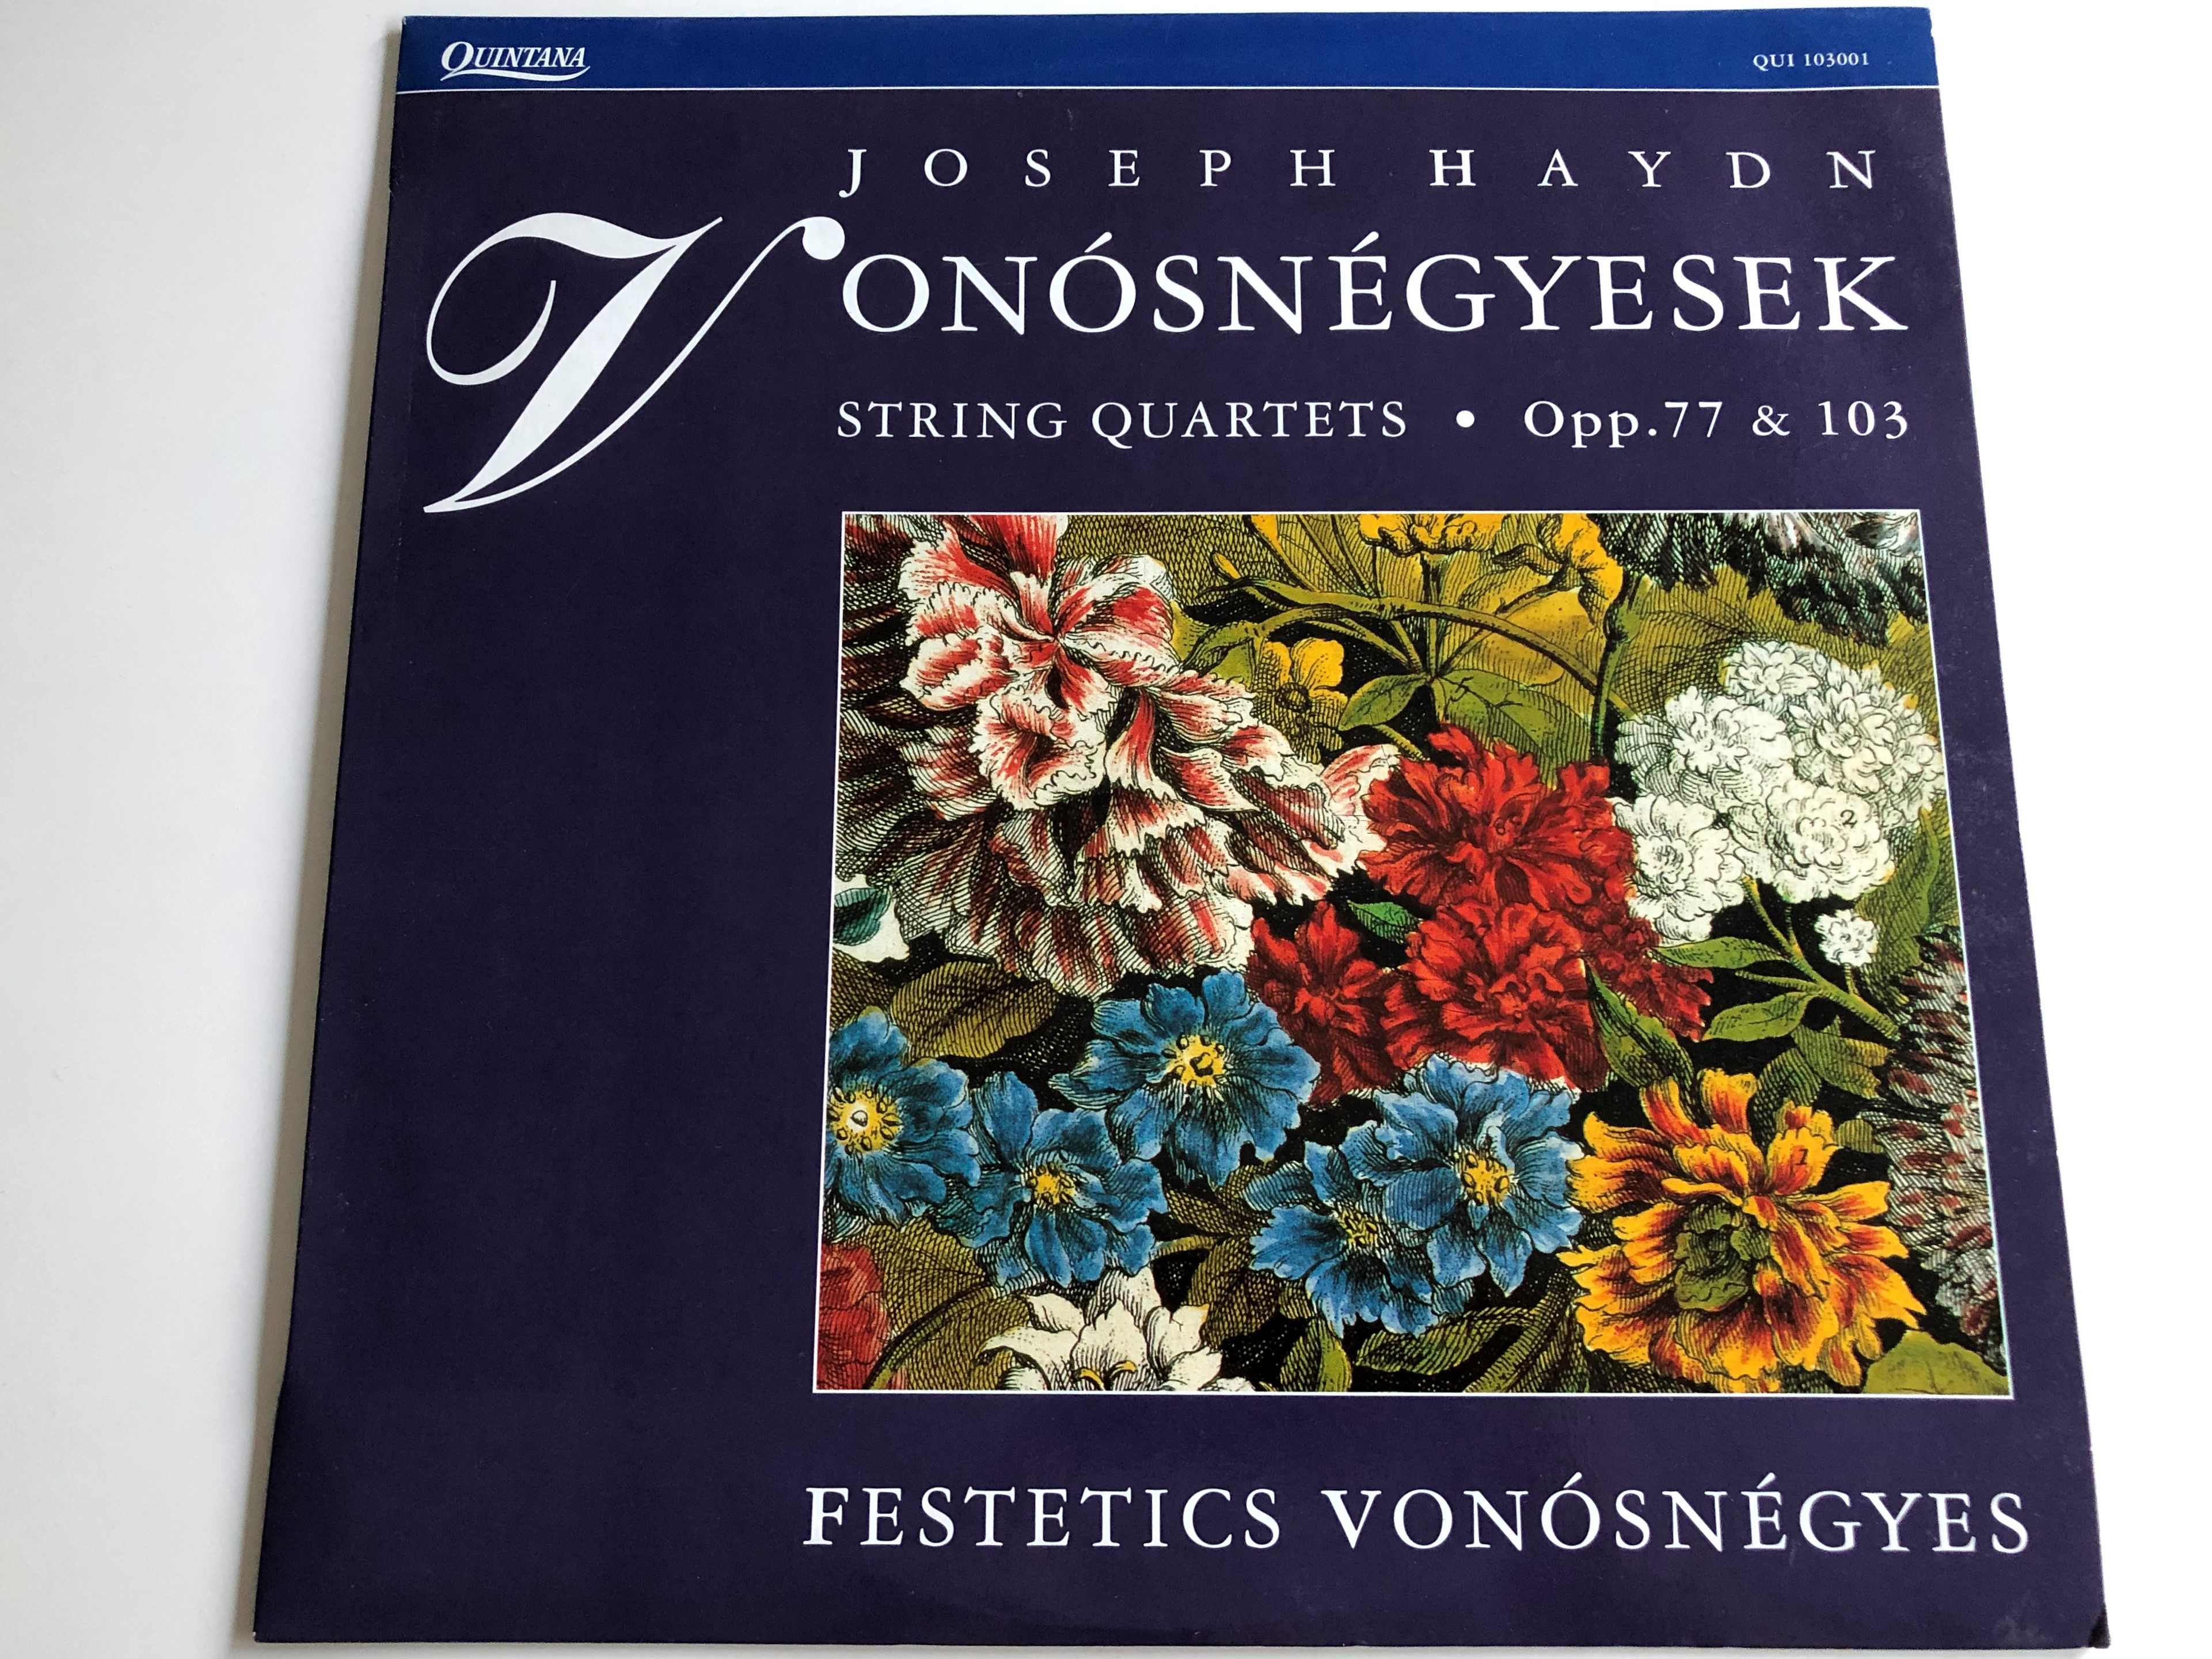 joseph-haydn-von-sn-gyesek-string-quartets-opp.77-103-festetics-von-sn-gyes-quintana-lp-qui-103001-1-.jpg